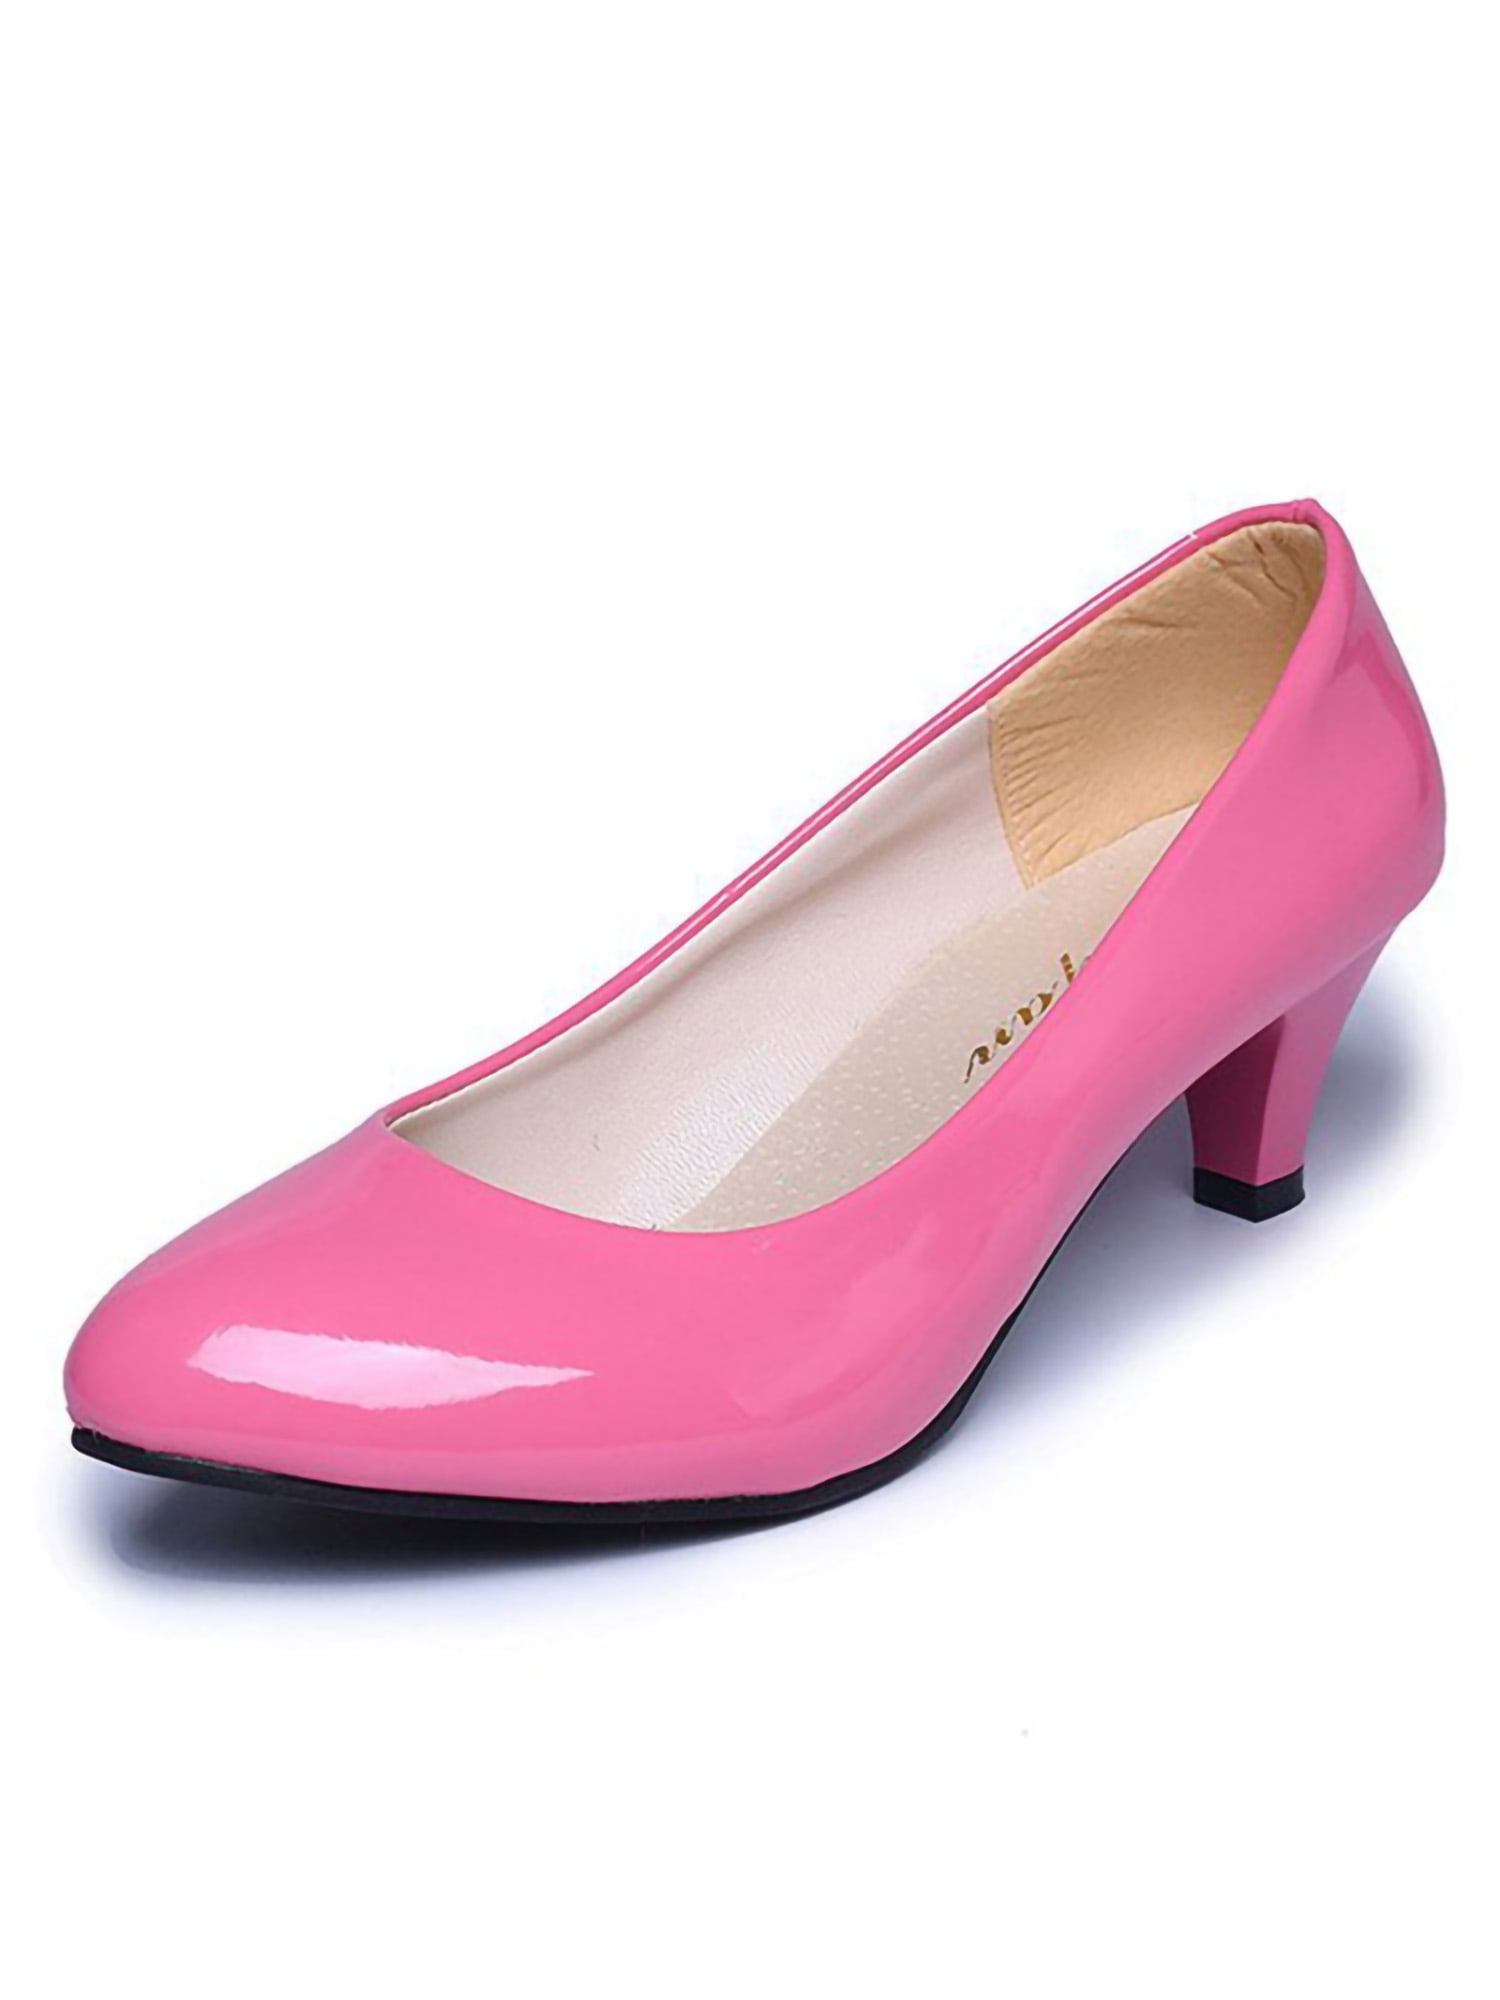 verdediging Uitvoeren schotel Gomelly Women's Heels Low Heel Pointed Toe Pump Shoes Party Dress Shoes  Pink 5.5 - Walmart.com